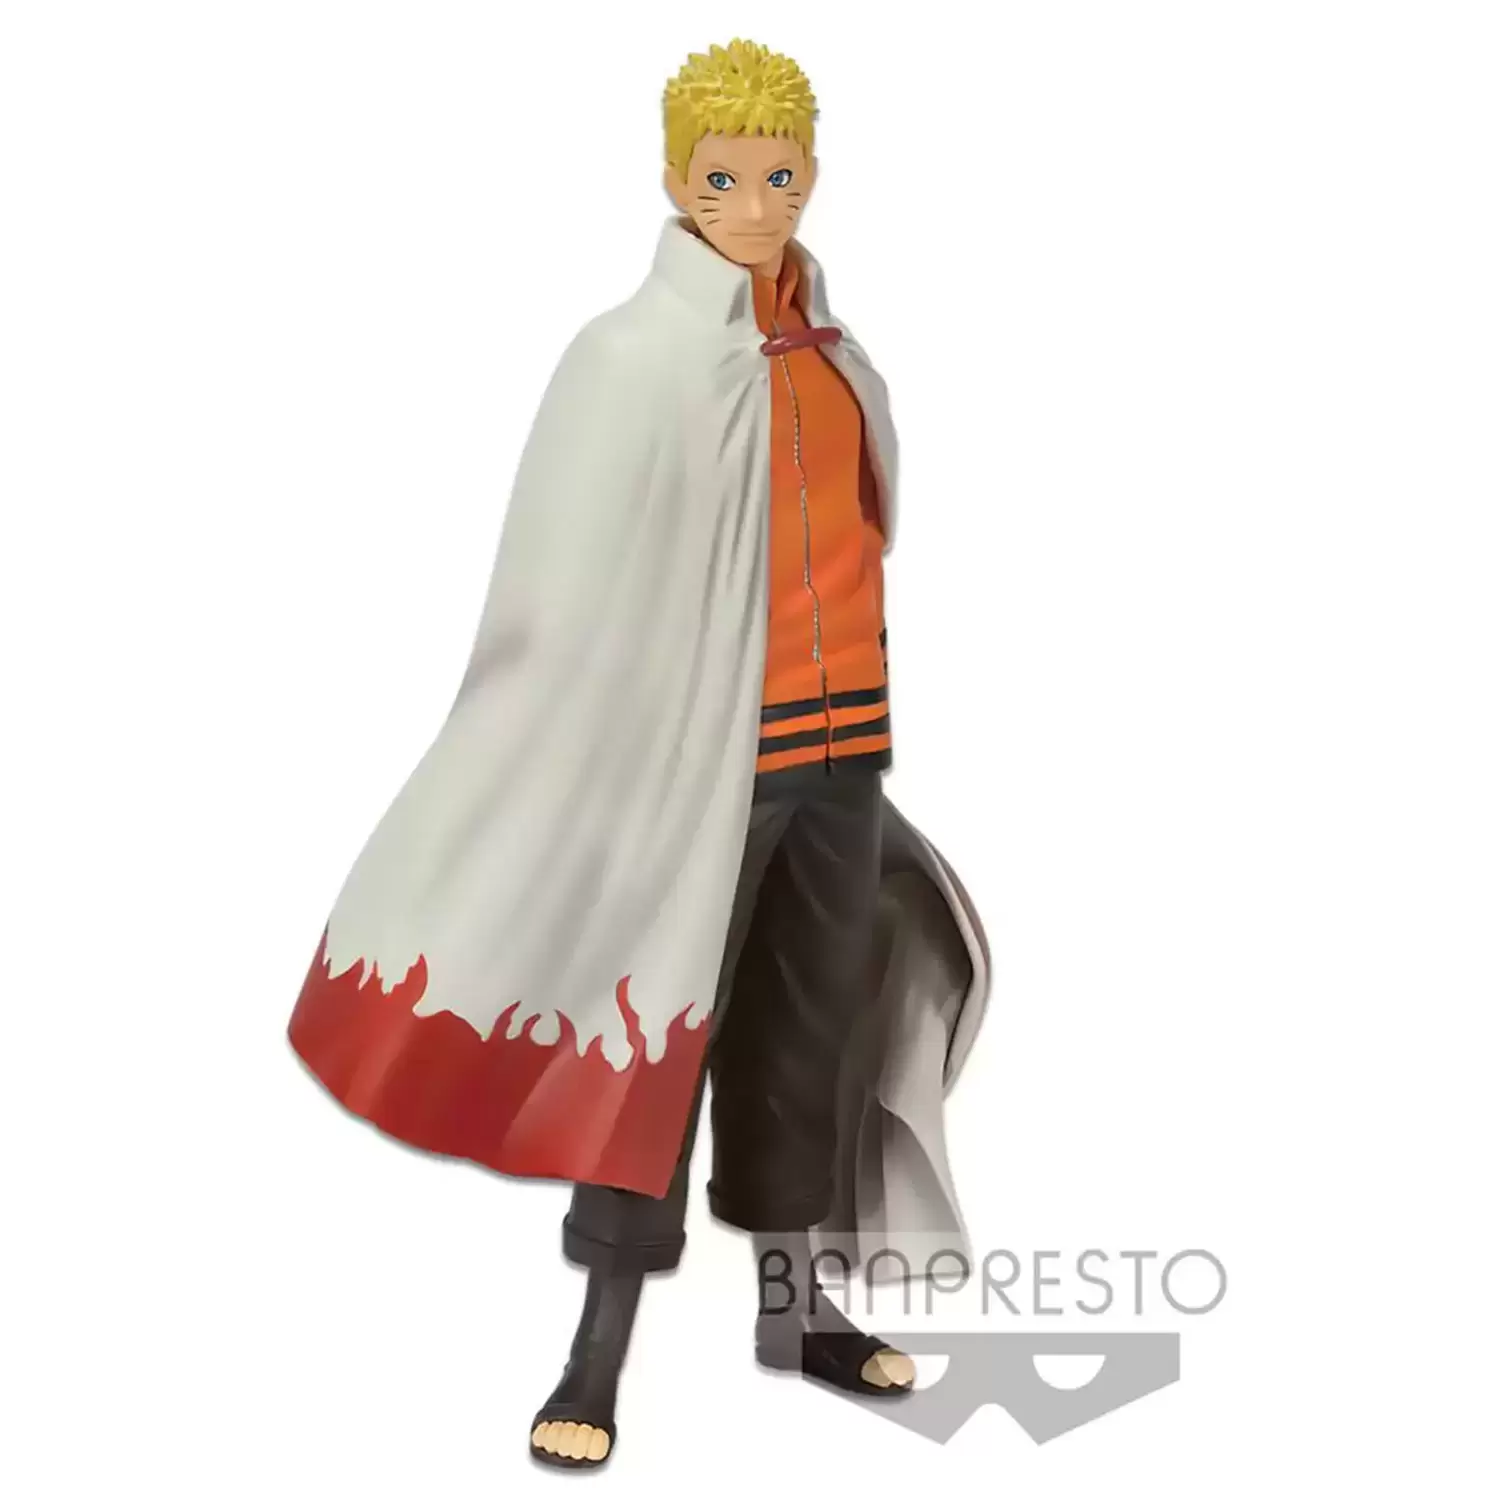 Figurines Naruto Banpresto - Naruto Shinobi Relations DXF - Boruto